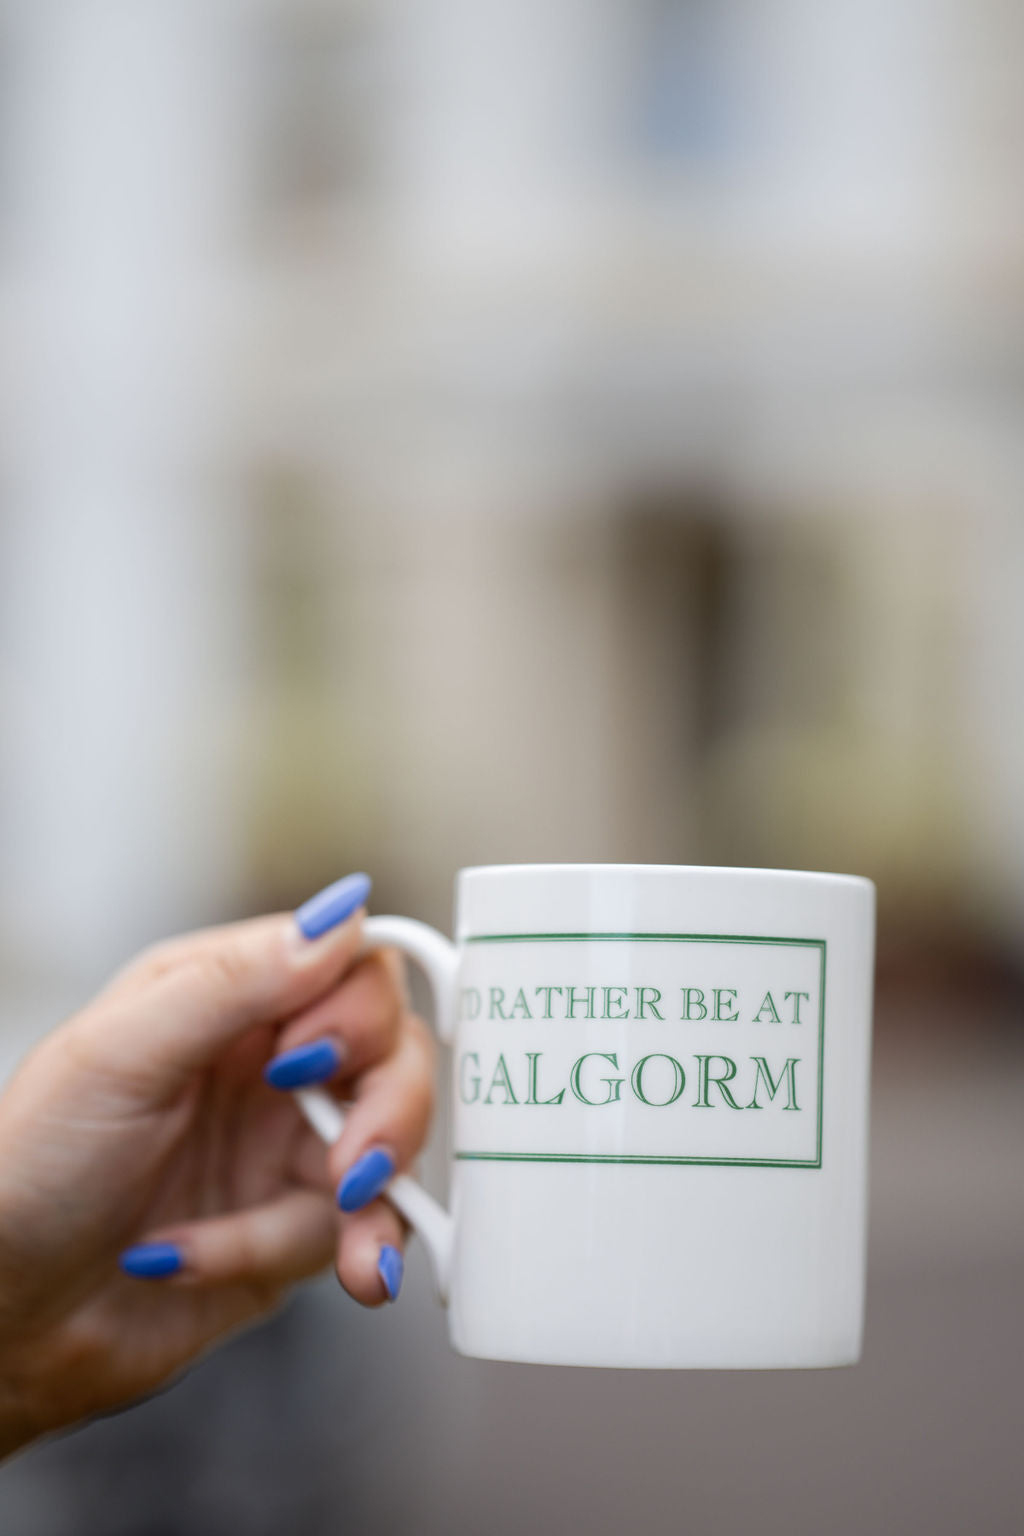 Galgorm Mug - Large